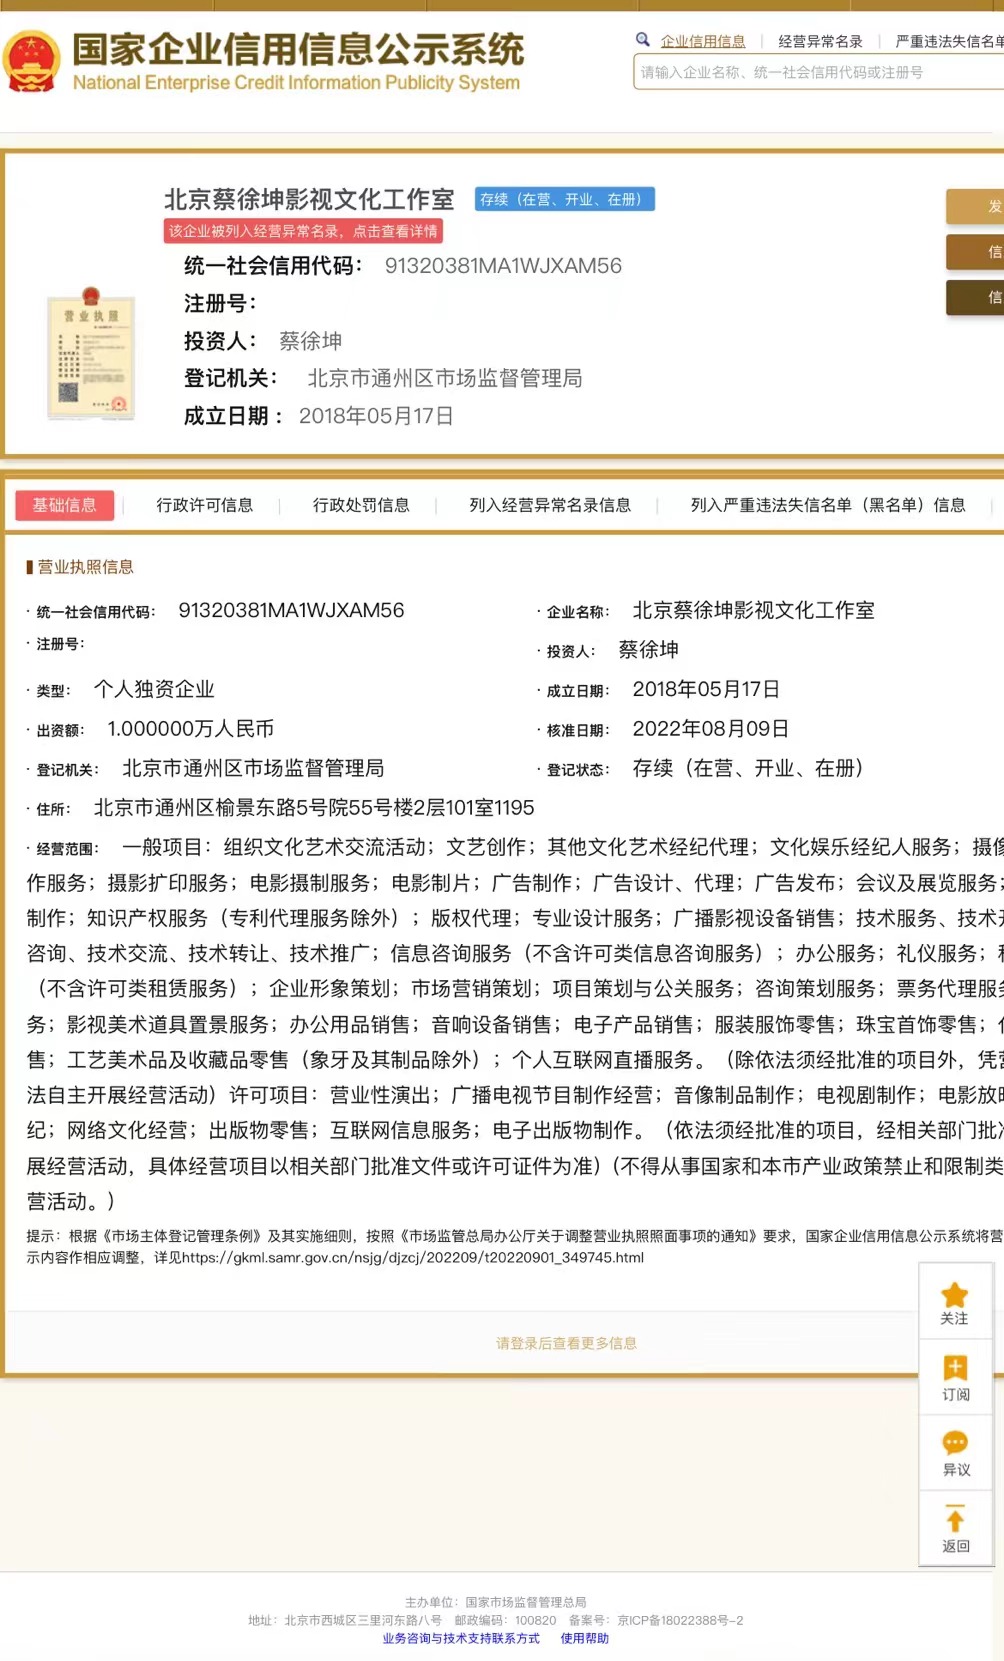 蔡徐坤工作室被列入经营异常名录